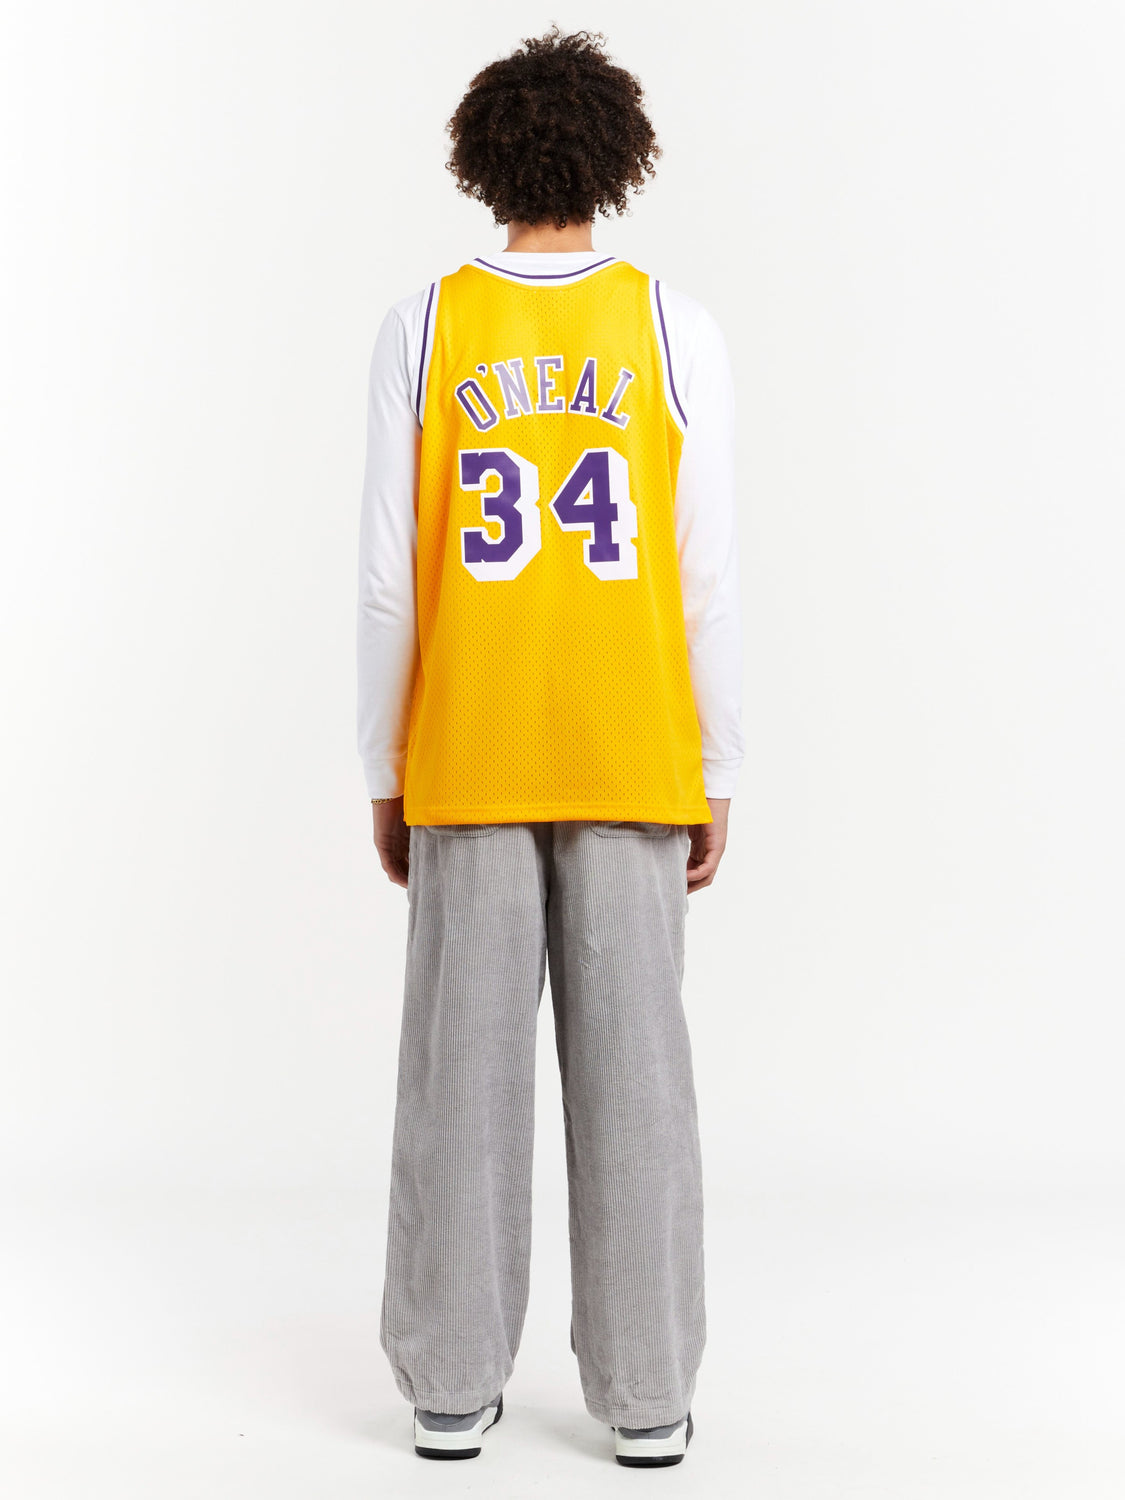 Mitchell & Ness La Lakers Swingman Jersey - Shaq S